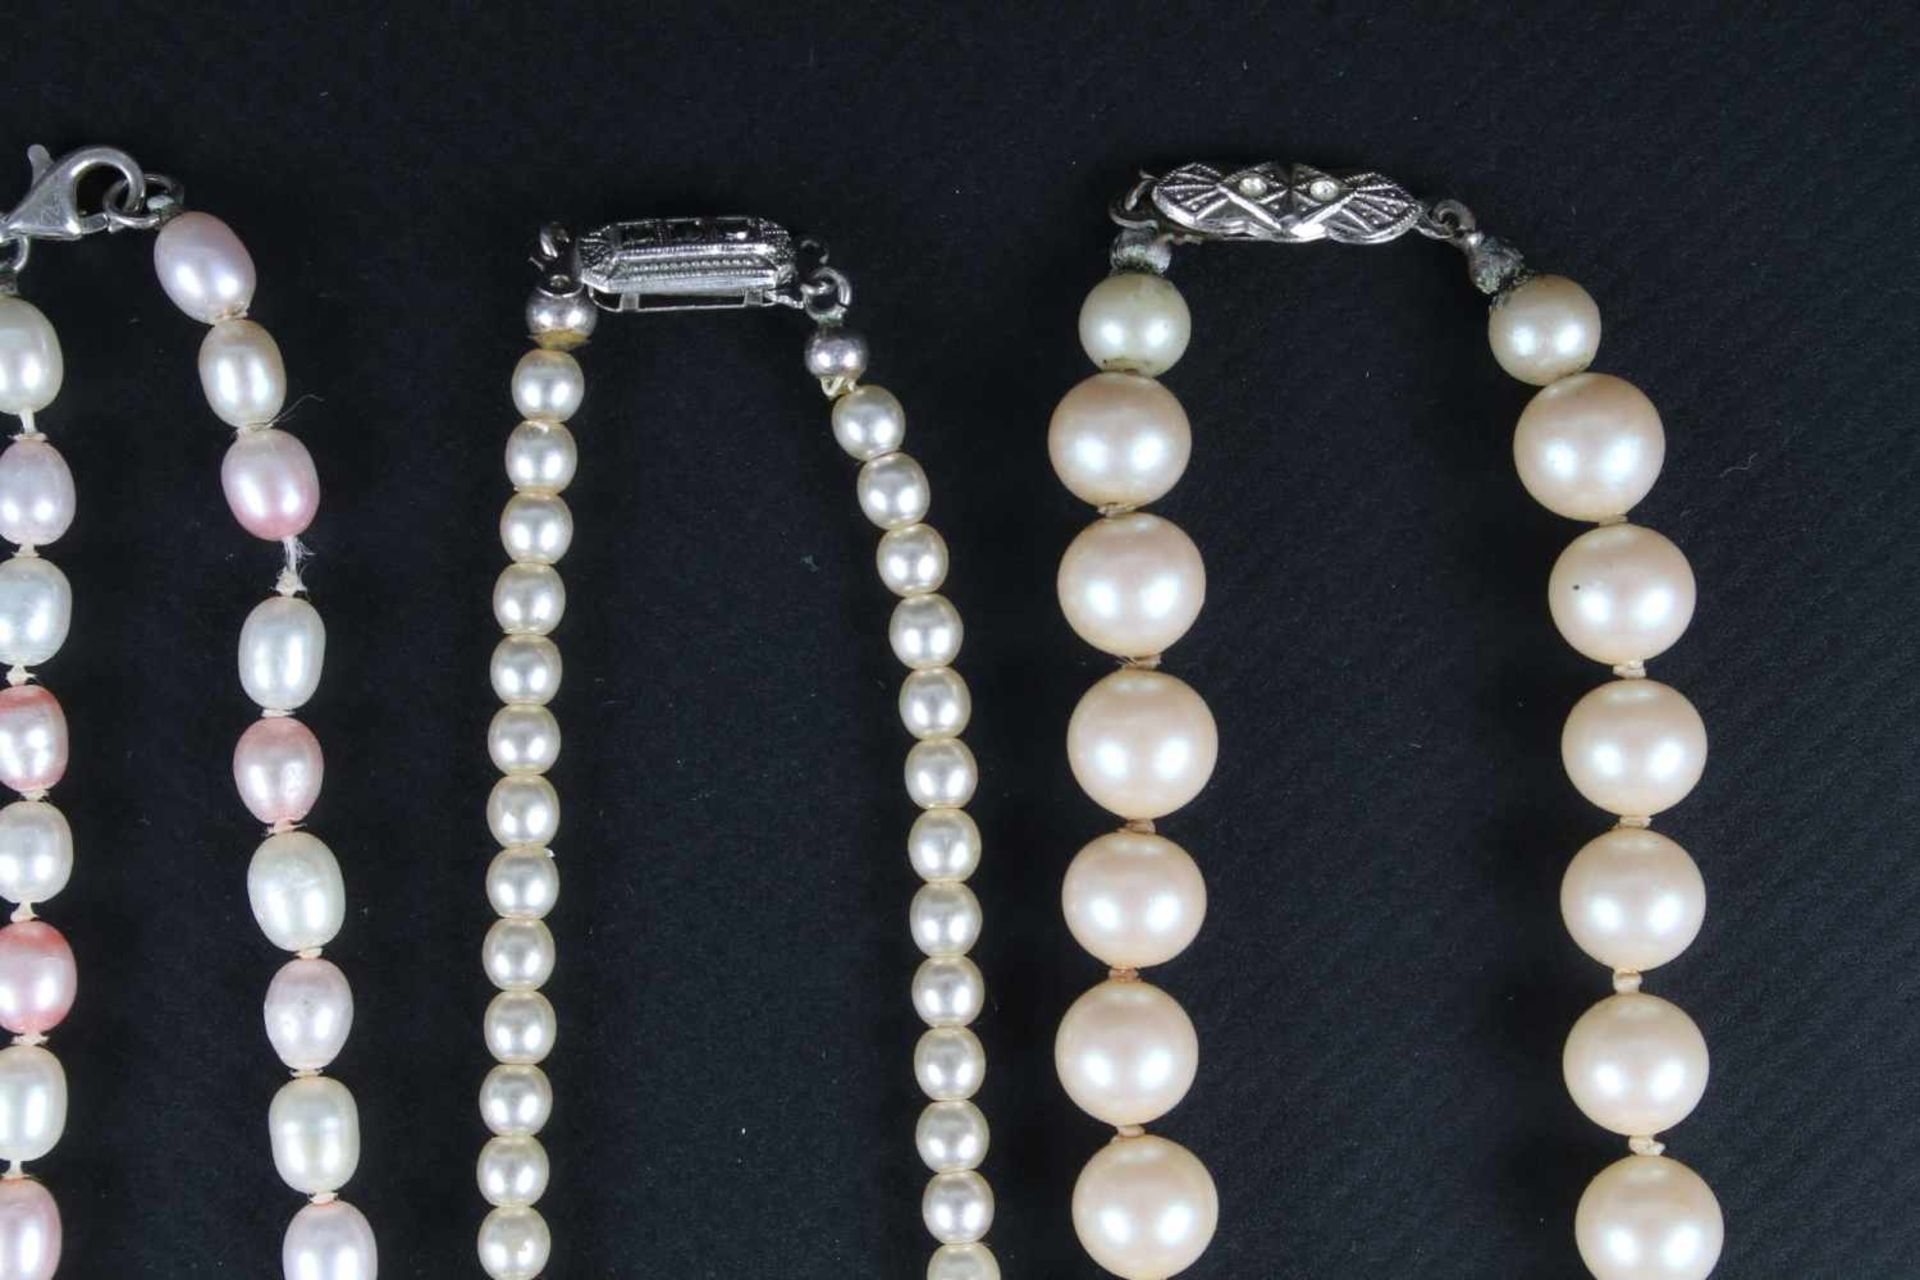 11 Perlenketten mit Silberverschluss, 11 pearl necklaces with silver clasp, - Bild 5 aus 5